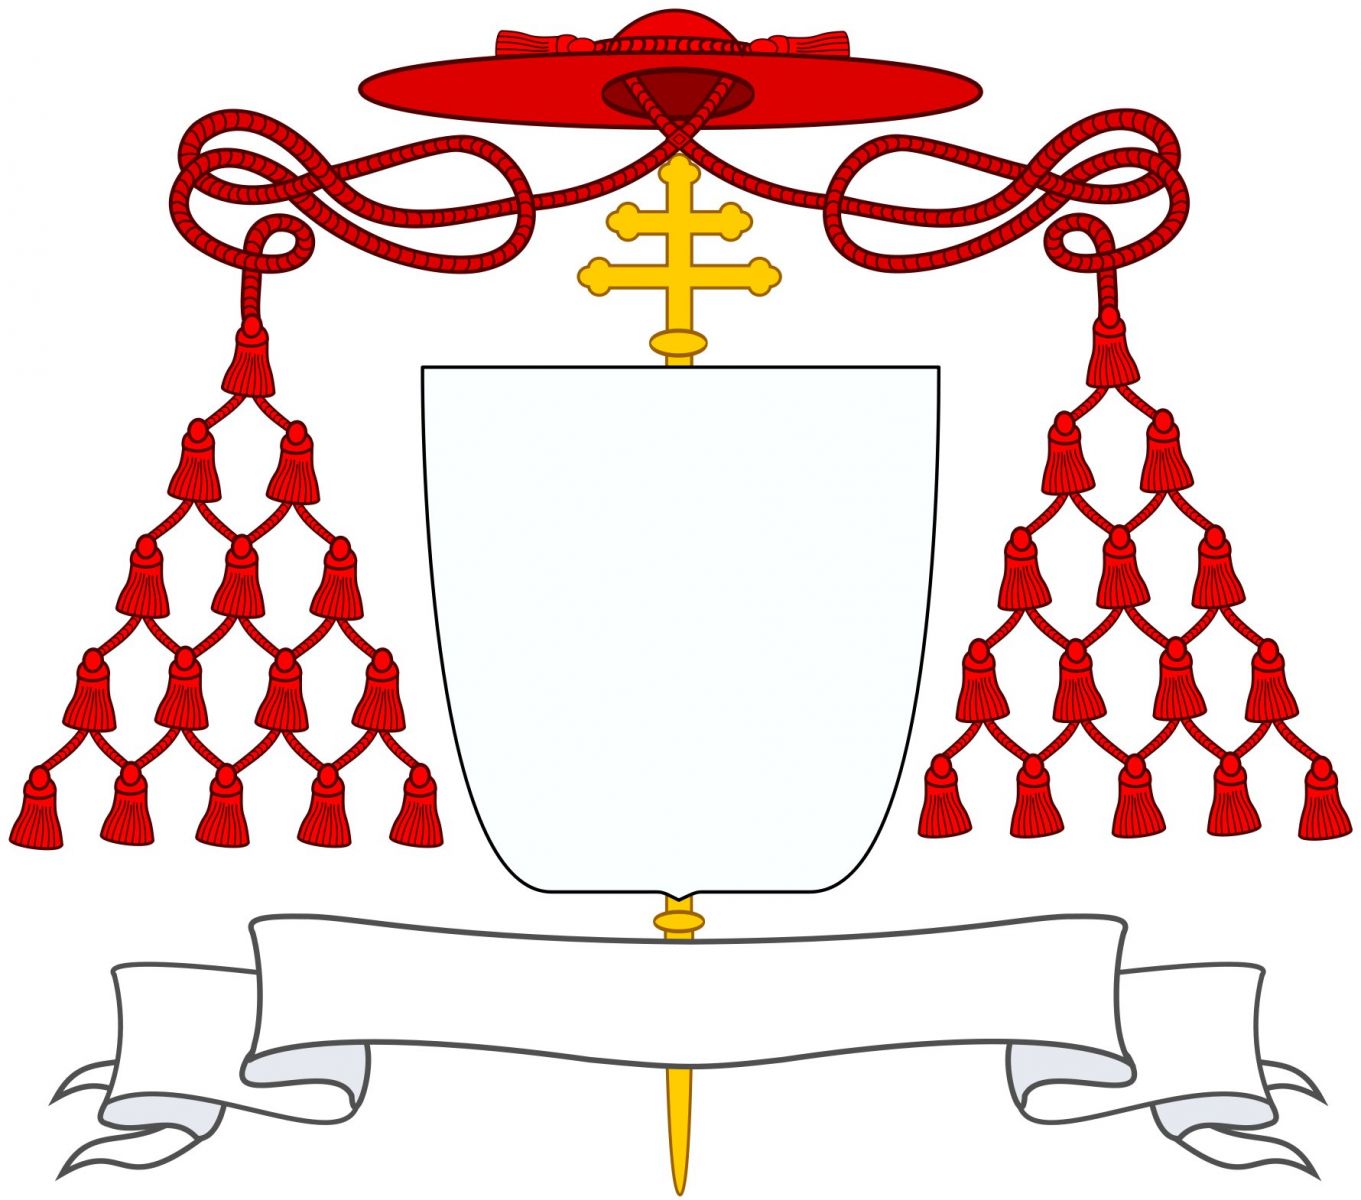 Arqudiocese de Zagreb